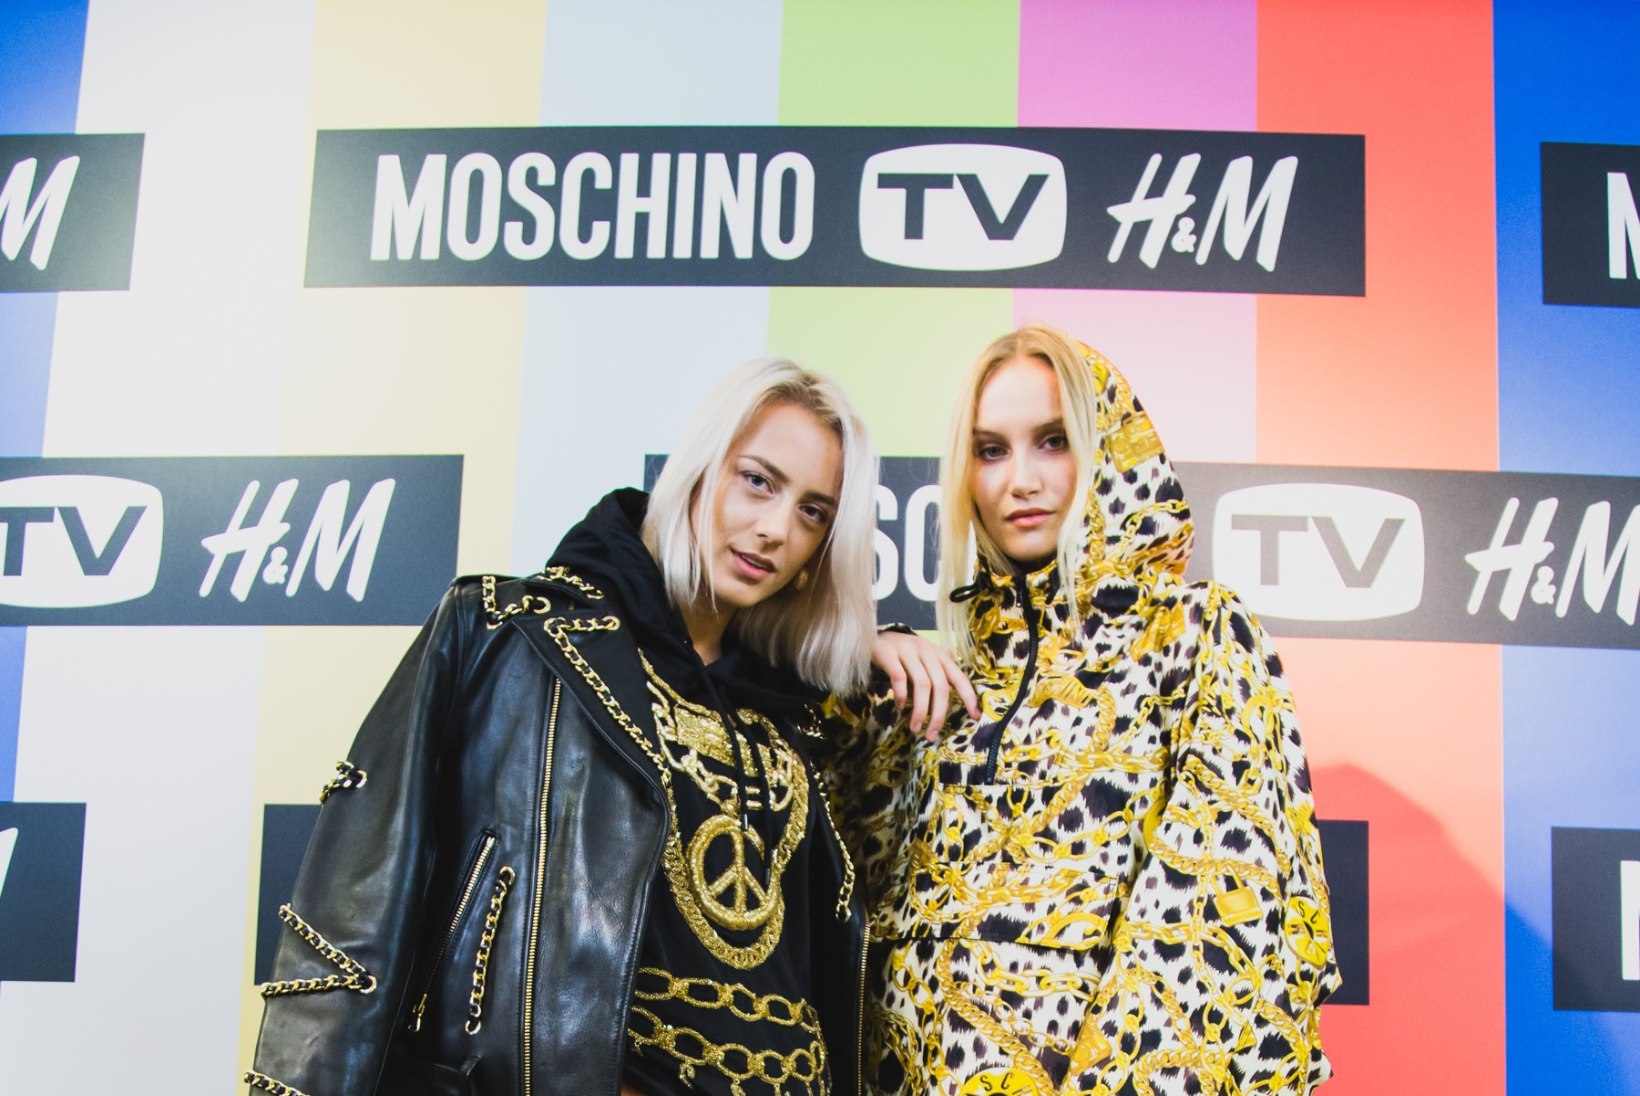 PILDID | Eesti moehoolikud möllasid Moschino pöörase TV H&M kollektsiooniga